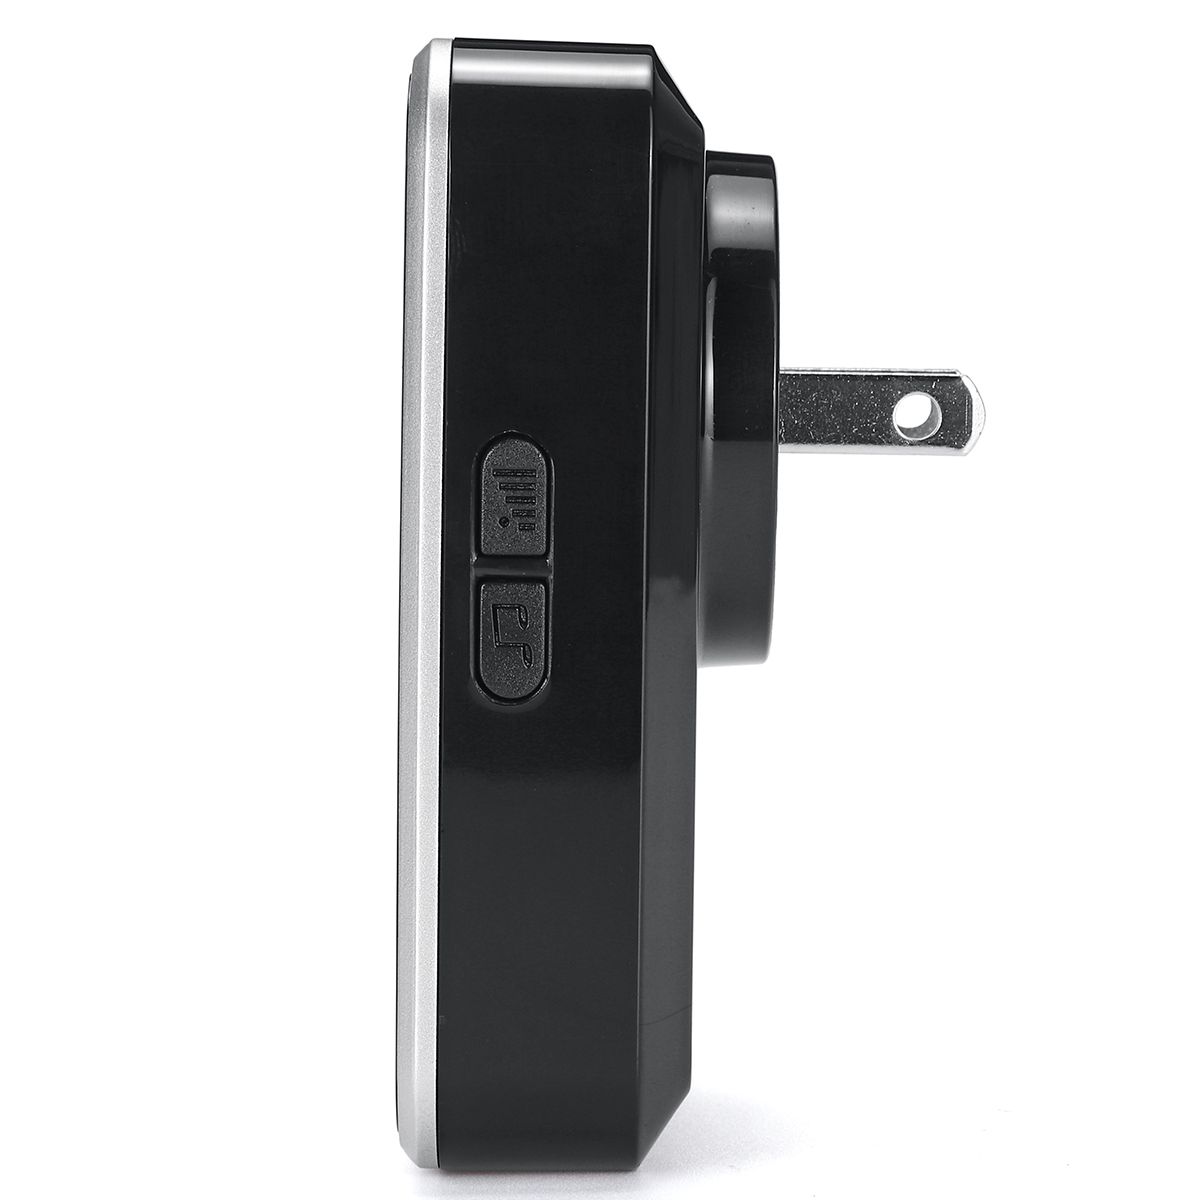 Bell-Ding-Dong-Indoor-Button-Machine-Wireless-Dingdong-Doorbell-Self-Powered-Household-Doorbell-1549188